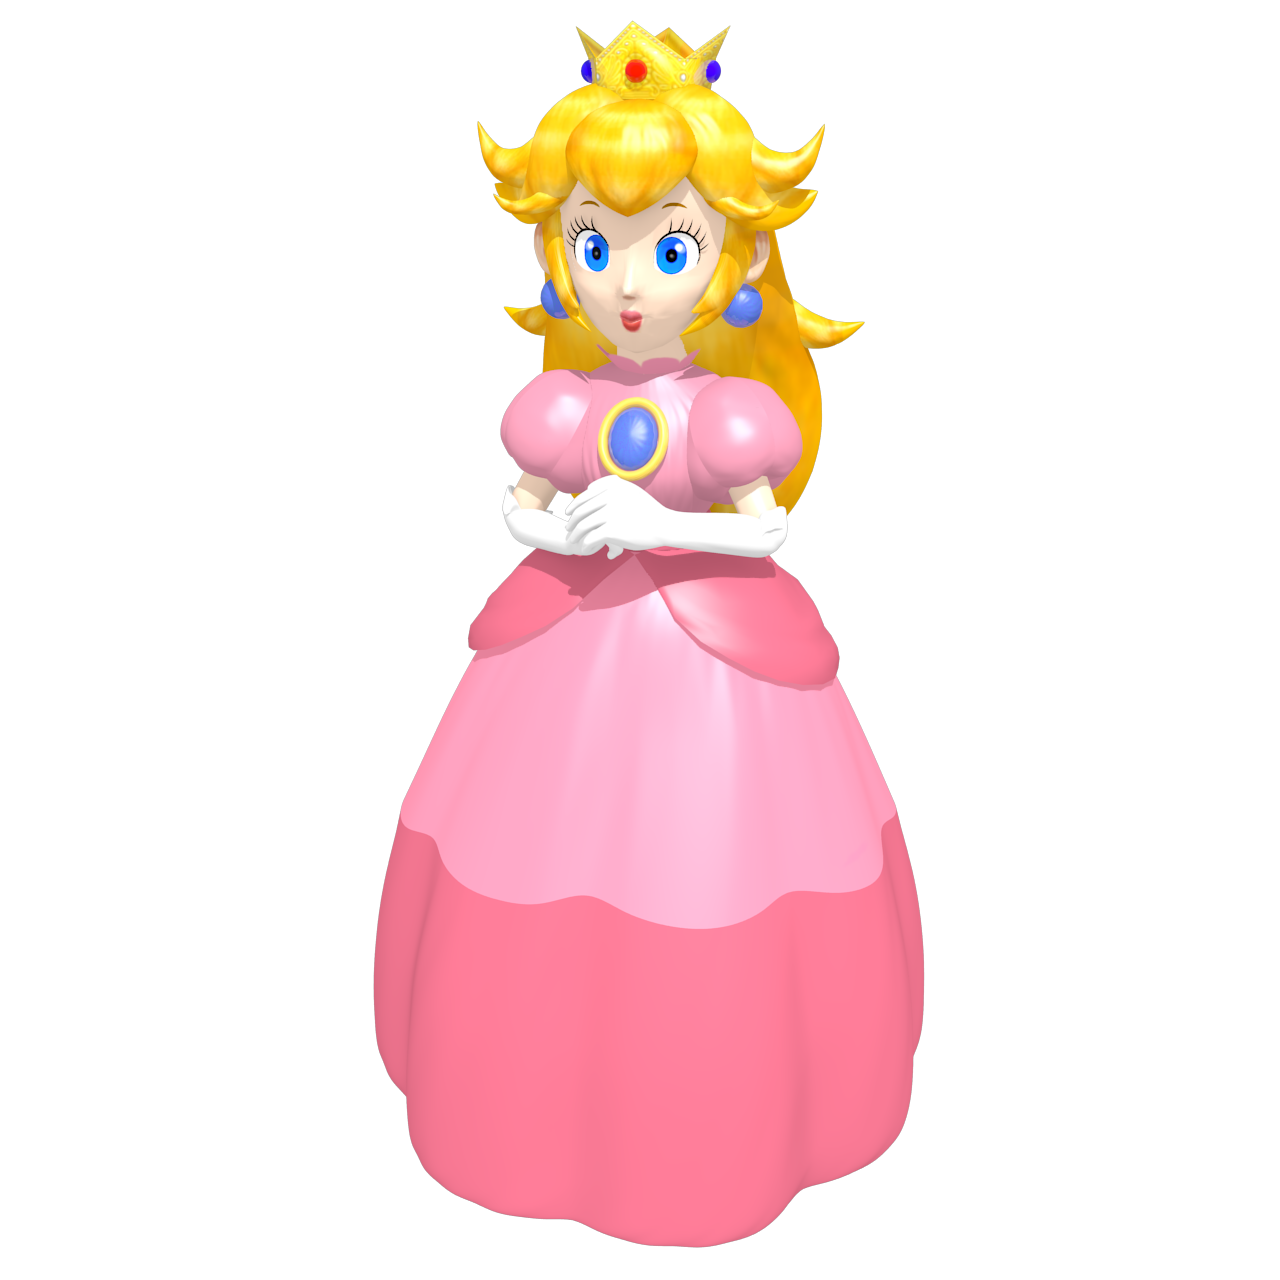 Princess Peach Toadstool Vinfreild 'Game Piece' by Vinfreild on DeviantArt